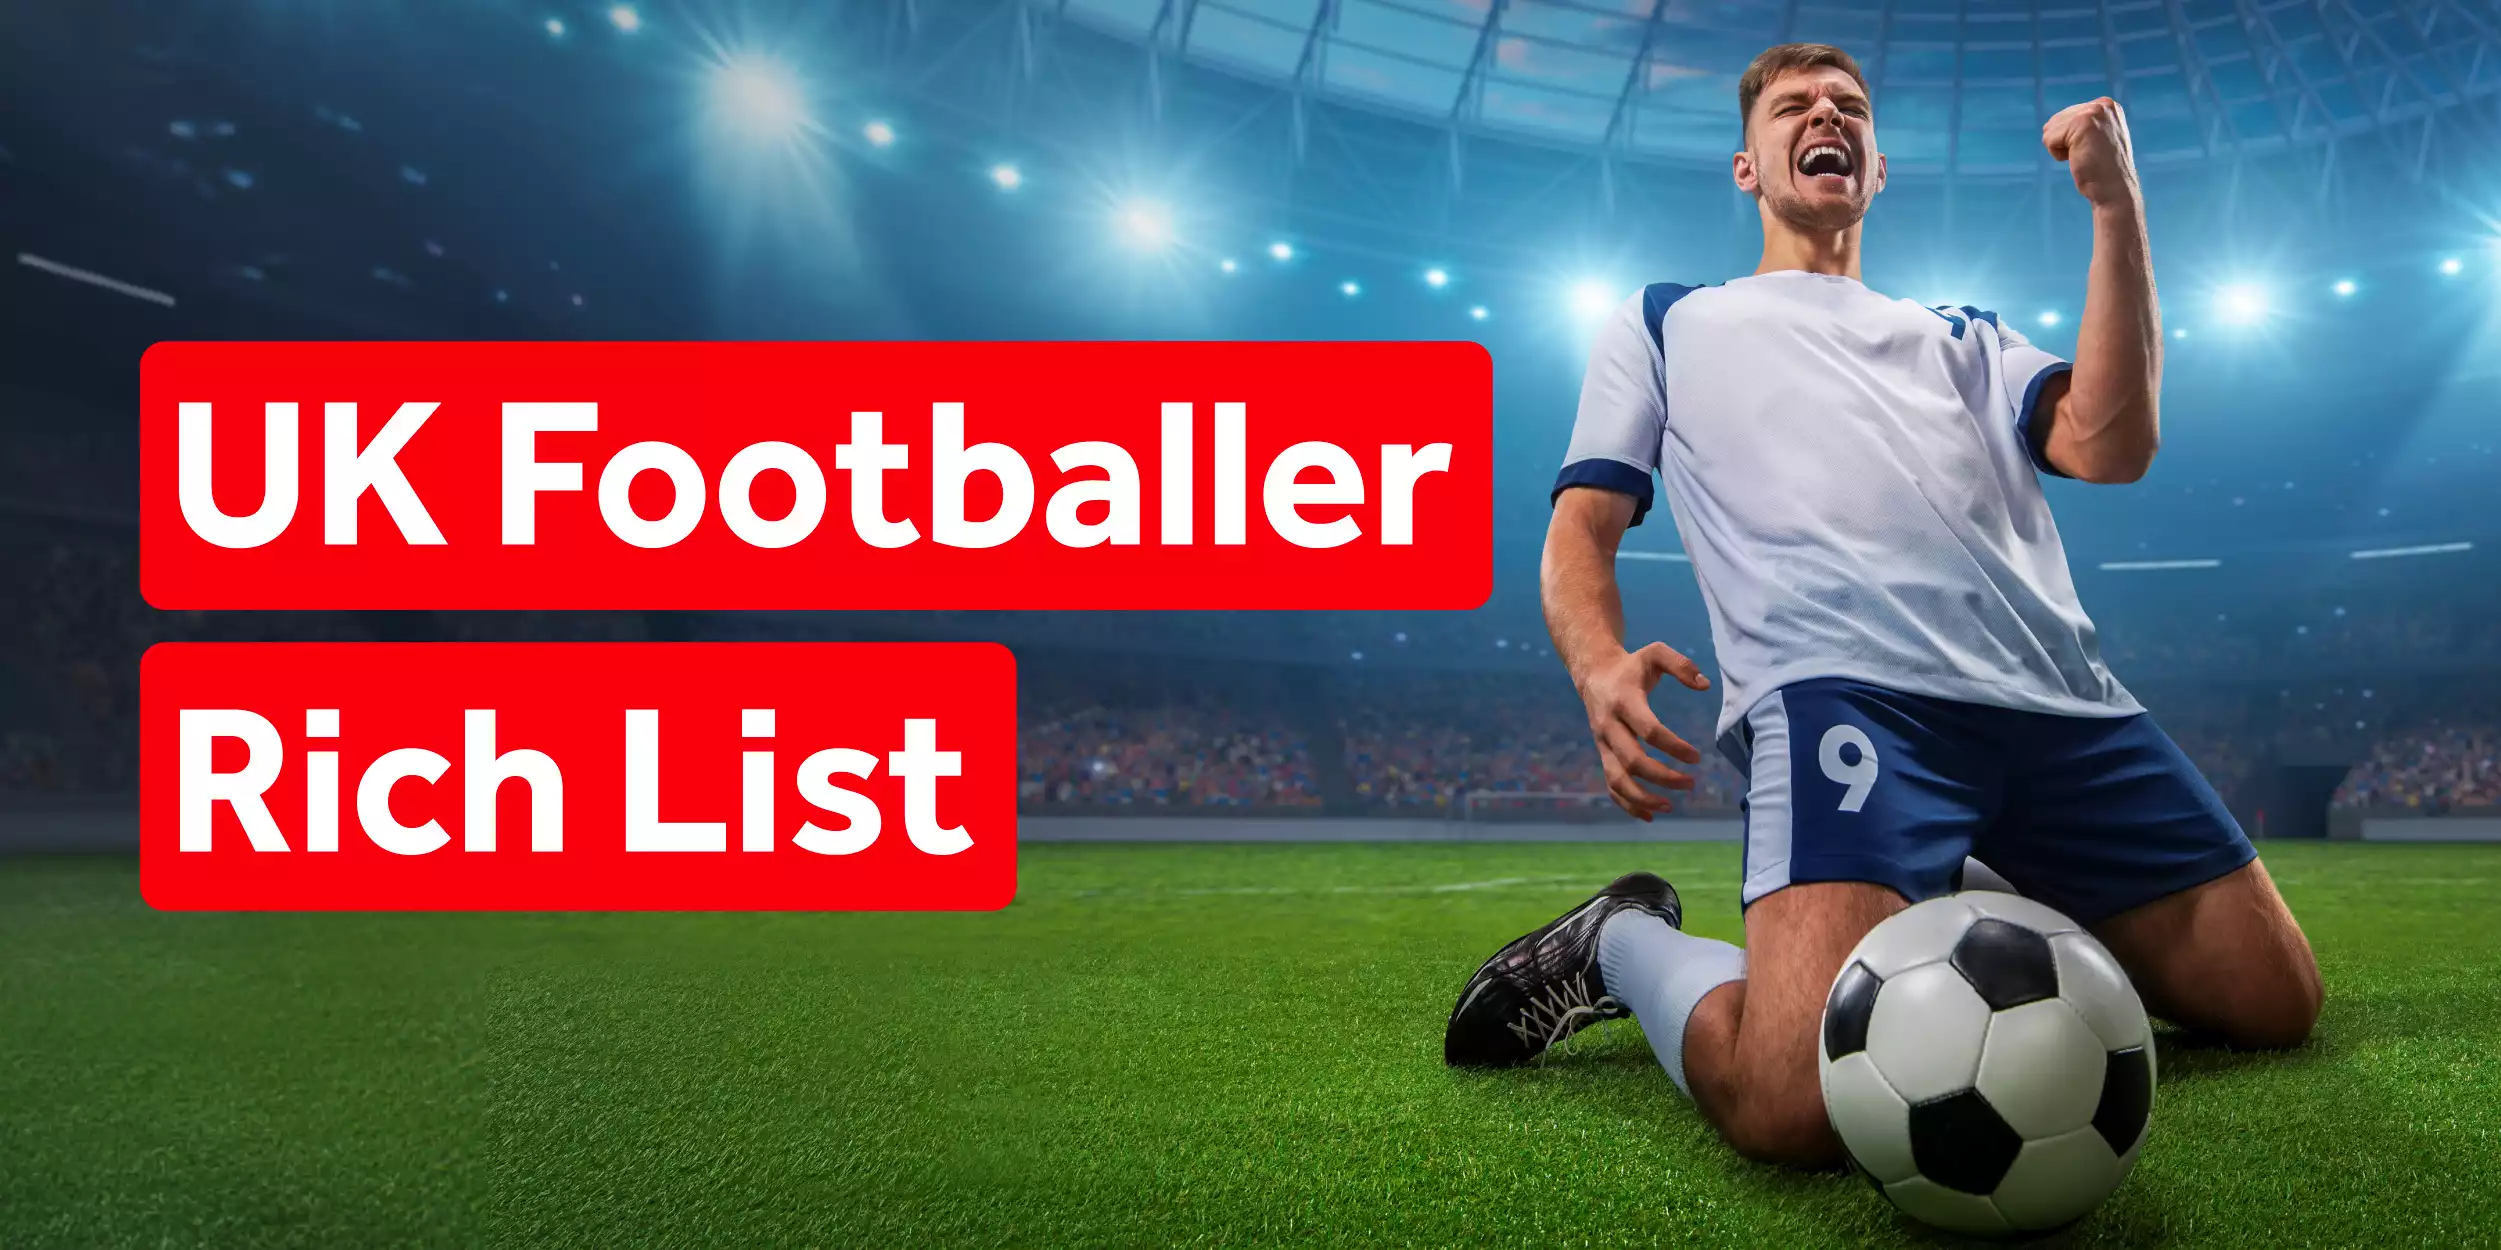 UK Footballer Rich List